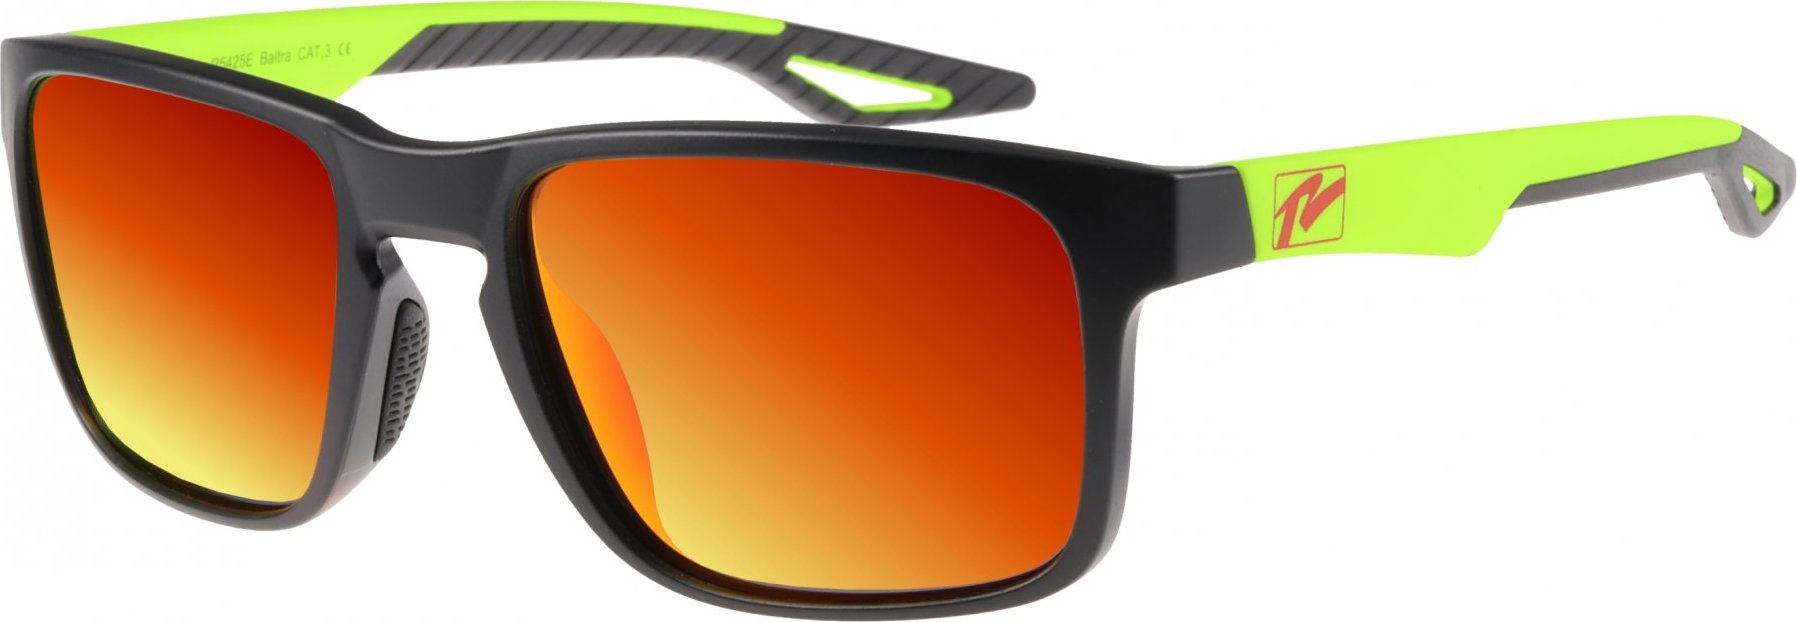 Sportovní sluneční brýle RELAX Baltra žluté